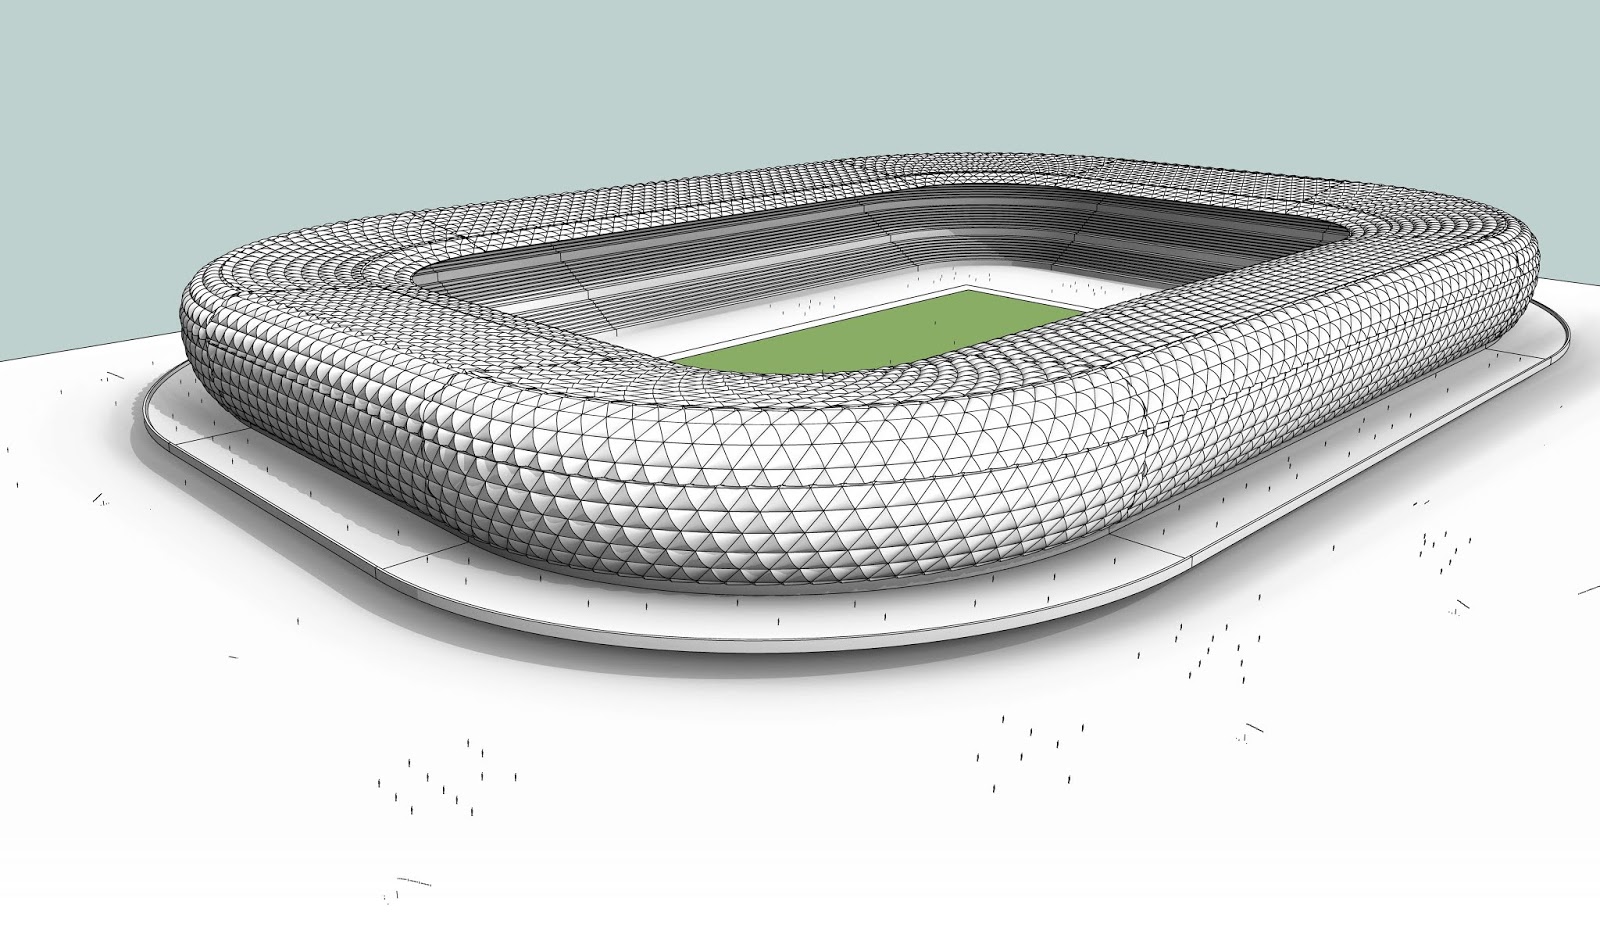 The Allianz Arena stadium parametric design